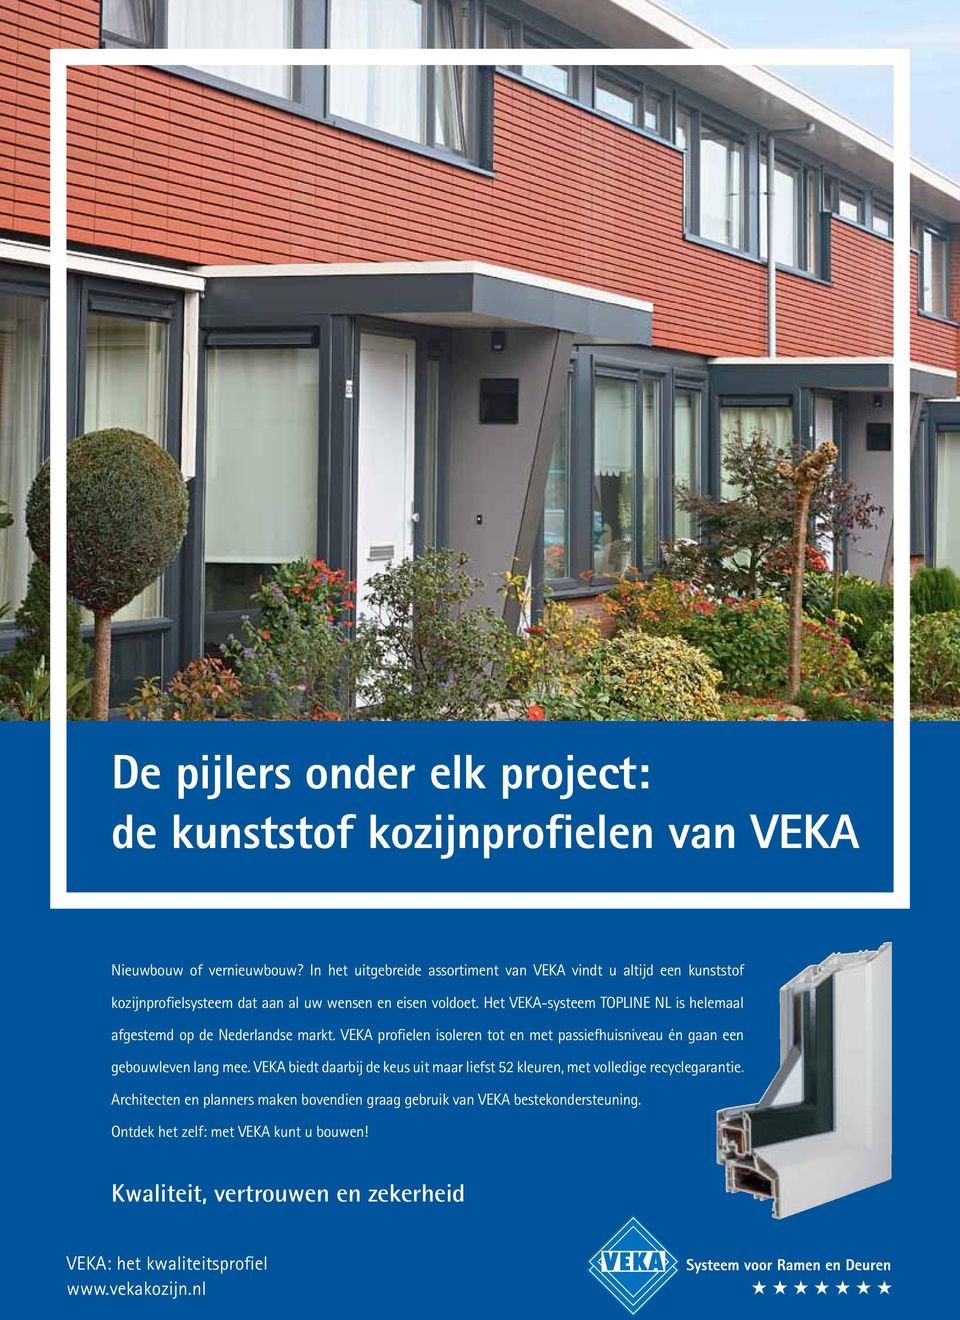 Het VEKA-systeem TOPLINE NL is helemaal afgestemd op de Nederlandse markt. VEKA profielen isoleren tot en met passiefhuisniveau én gaan een gebouwleven lang mee.